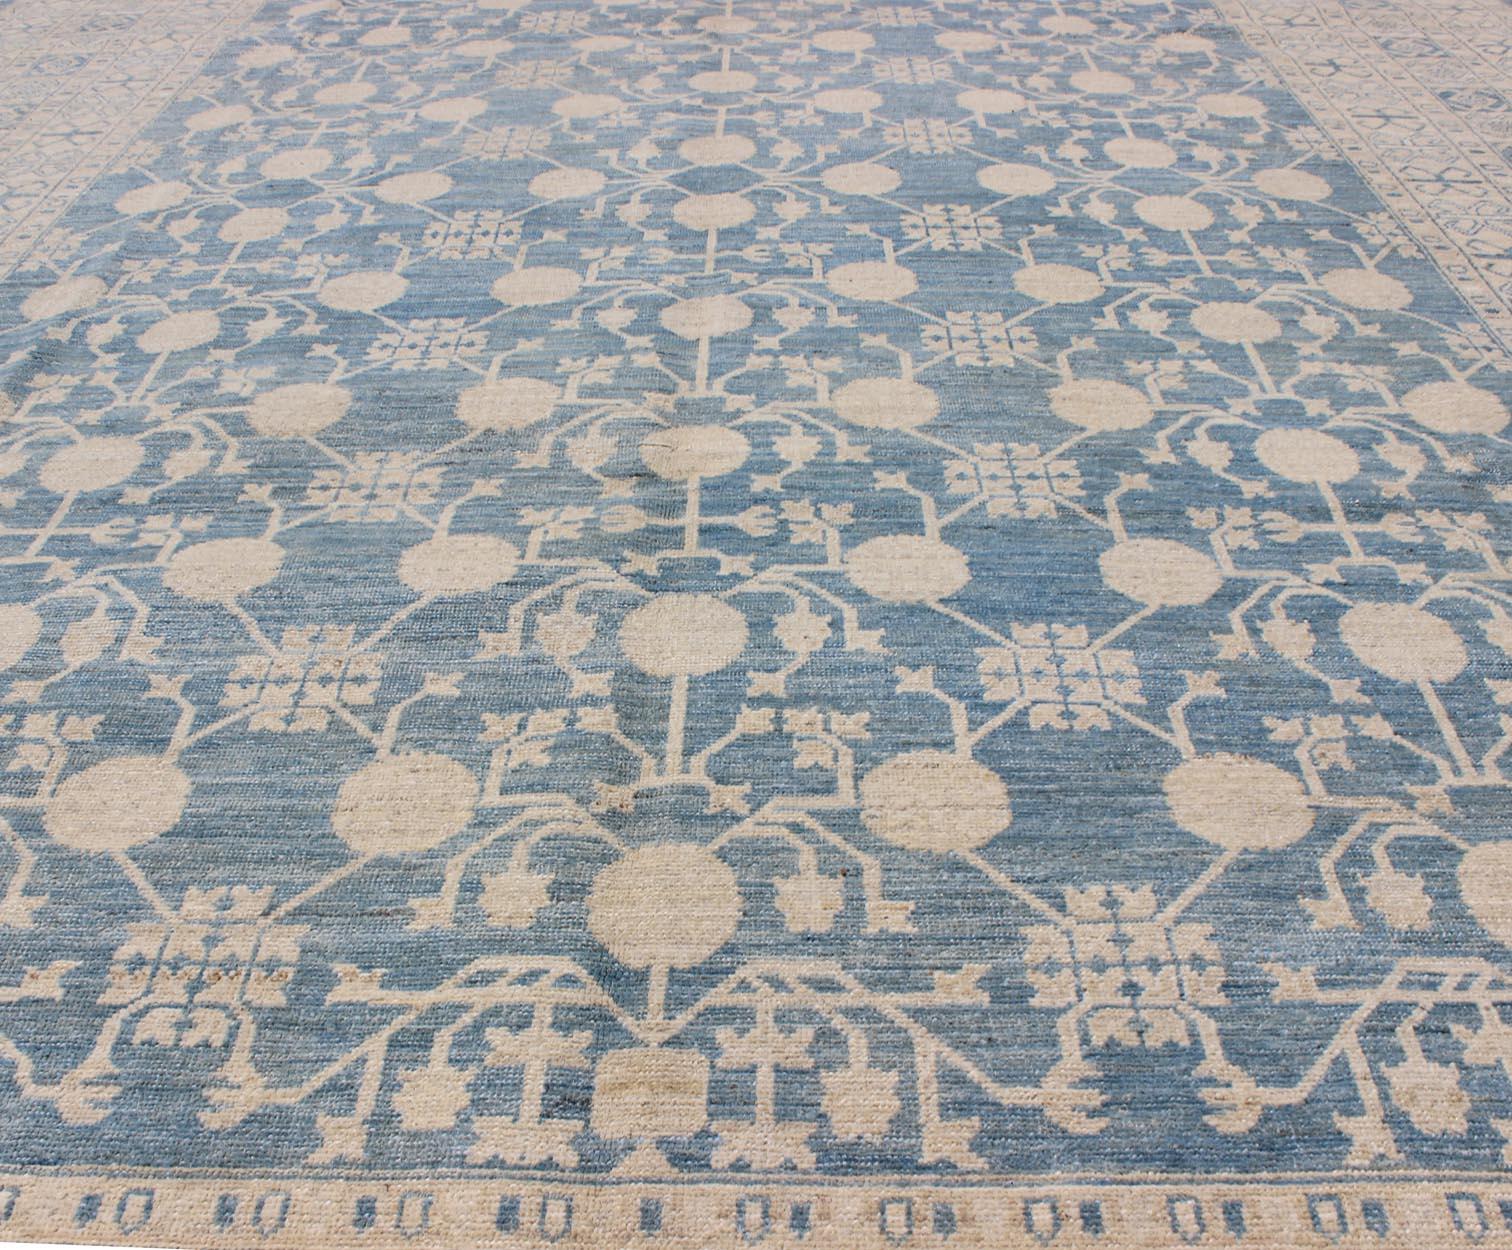 Großer Granatapfel Design Modern Khotan Teppich in Hellblau und Creme. Keivan Woven Arts / Teppich MP-1309-655, Herkunftsland / Art: Afghanistan / Khotan.
Maße: 8'7 x 12'5 
Dieser Khotan zeigt ein Granatapfelmuster, das von einem sich wiederholenden